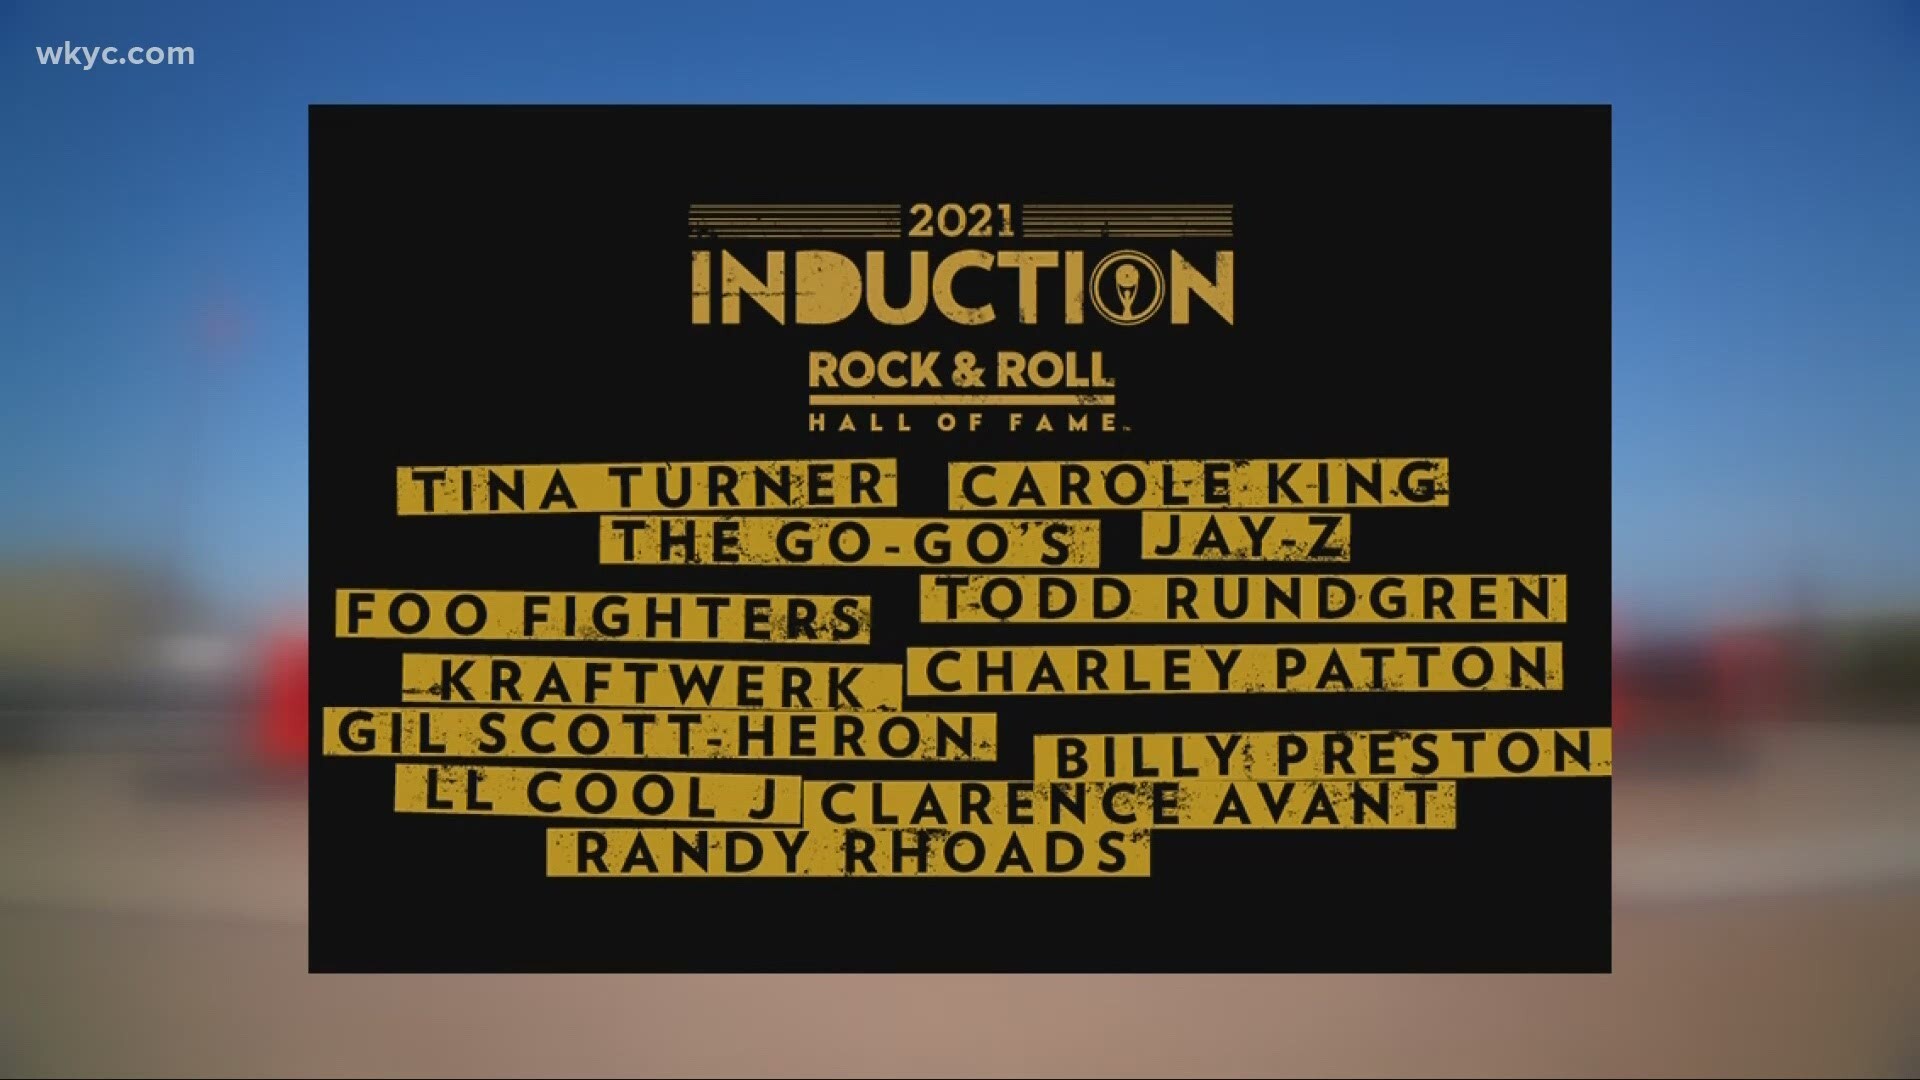 2021 წლის როკენროლის დიდების დარბაზის ვირტუალური ცერემონია / The 2021 Rock & Roll Hall of Fame Induction Ceremony